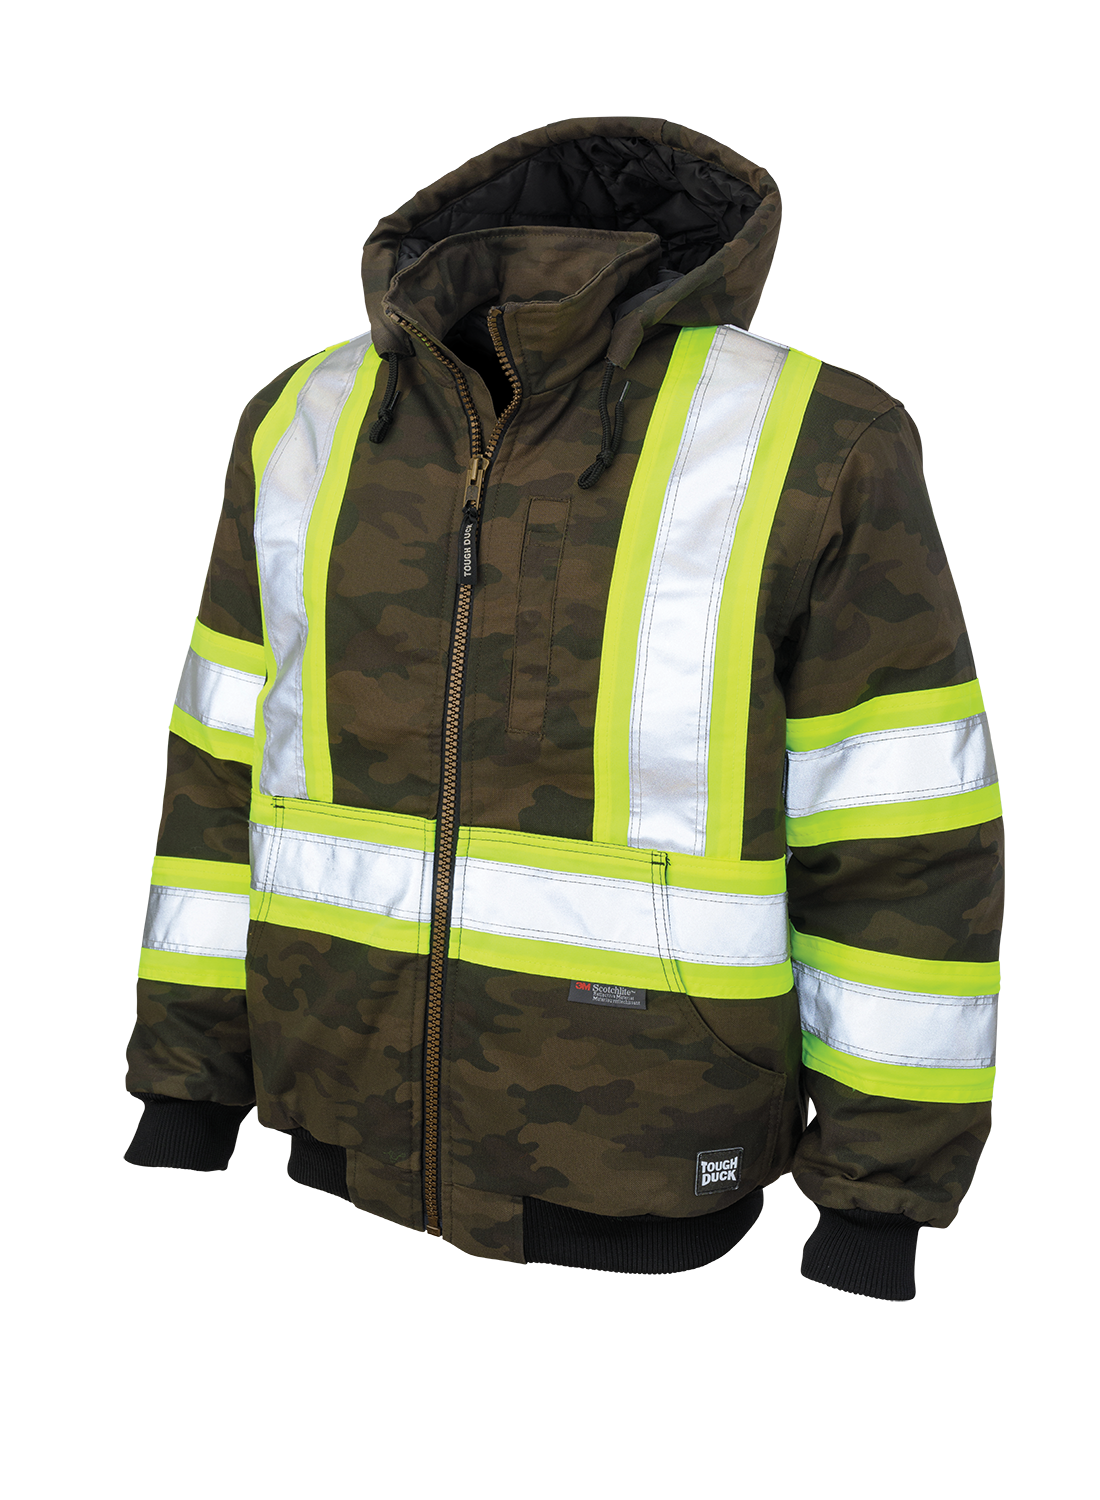 Tough Duck Men's Camo Hi Vis Safety Work Bomber Jacket SJ32 Cotton/Flex Duck Water Repellent Reflective Sizes S-5XL